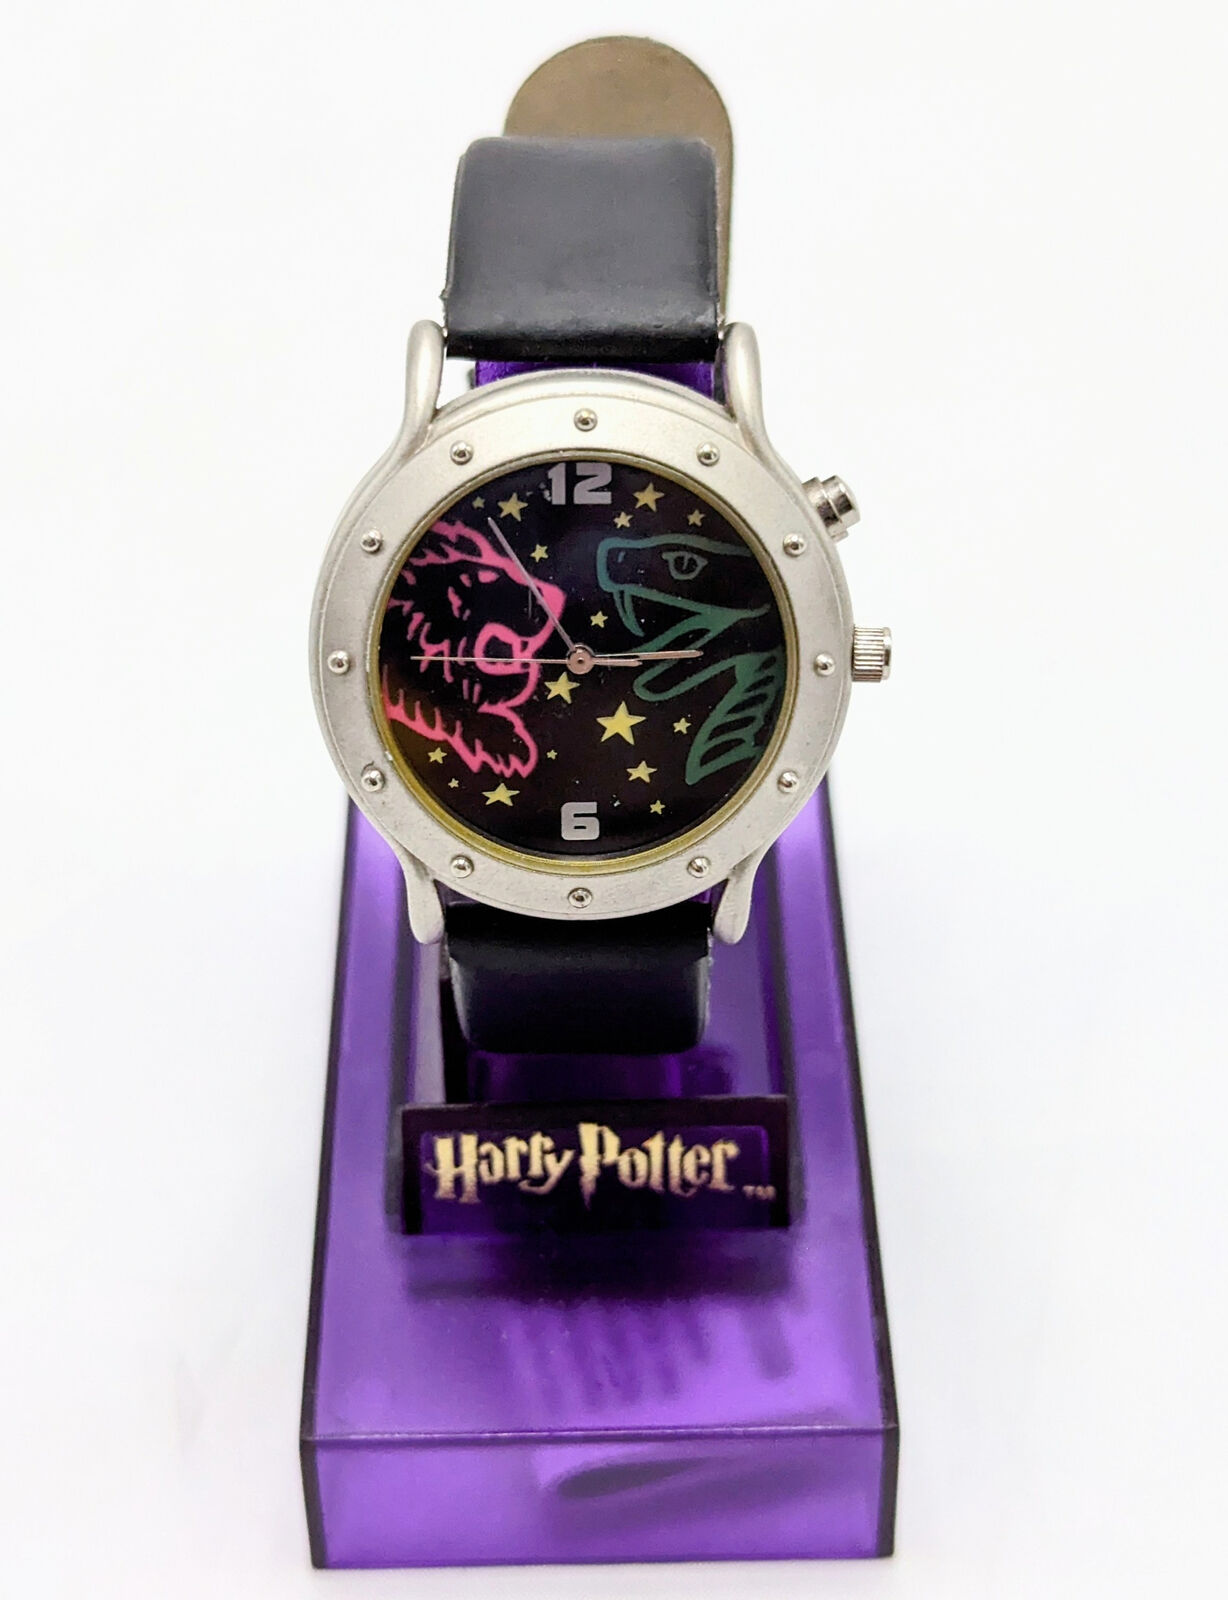 2001 Warner Bros Harry Potter Slytherin Vs Gryffindor House Watch